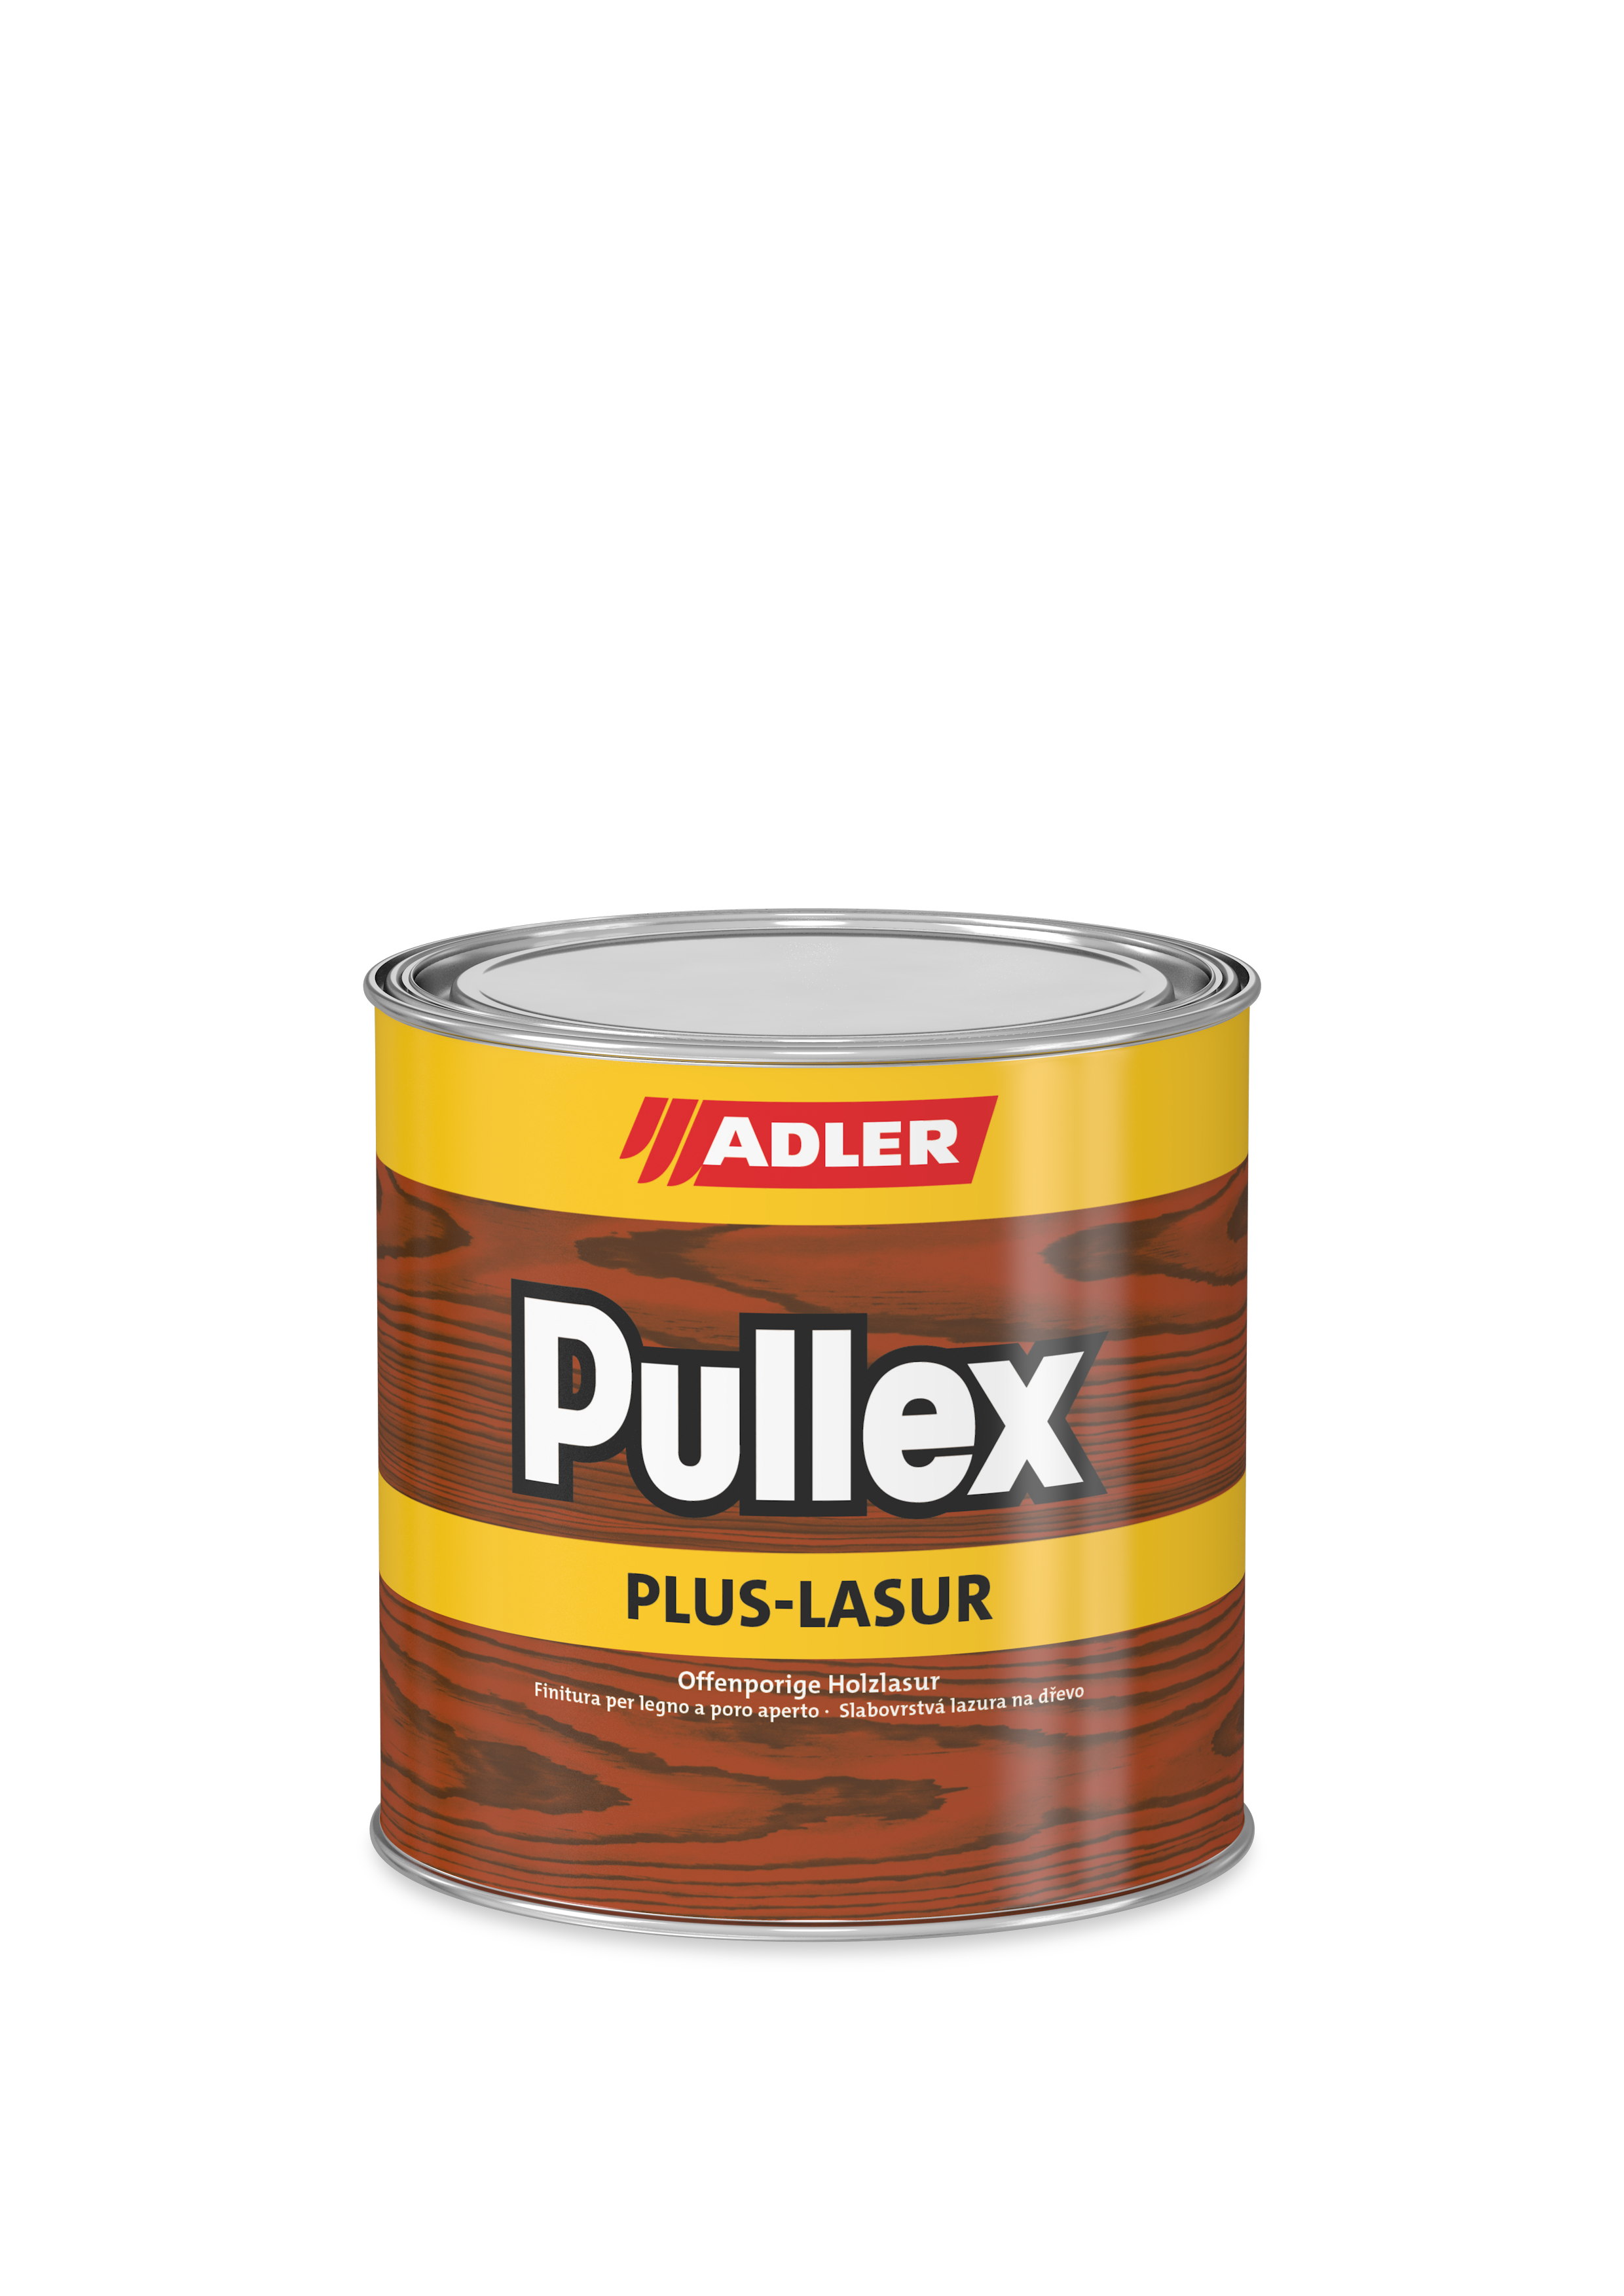 Pullex Plus-Lasur Sipo 0,75 Liter